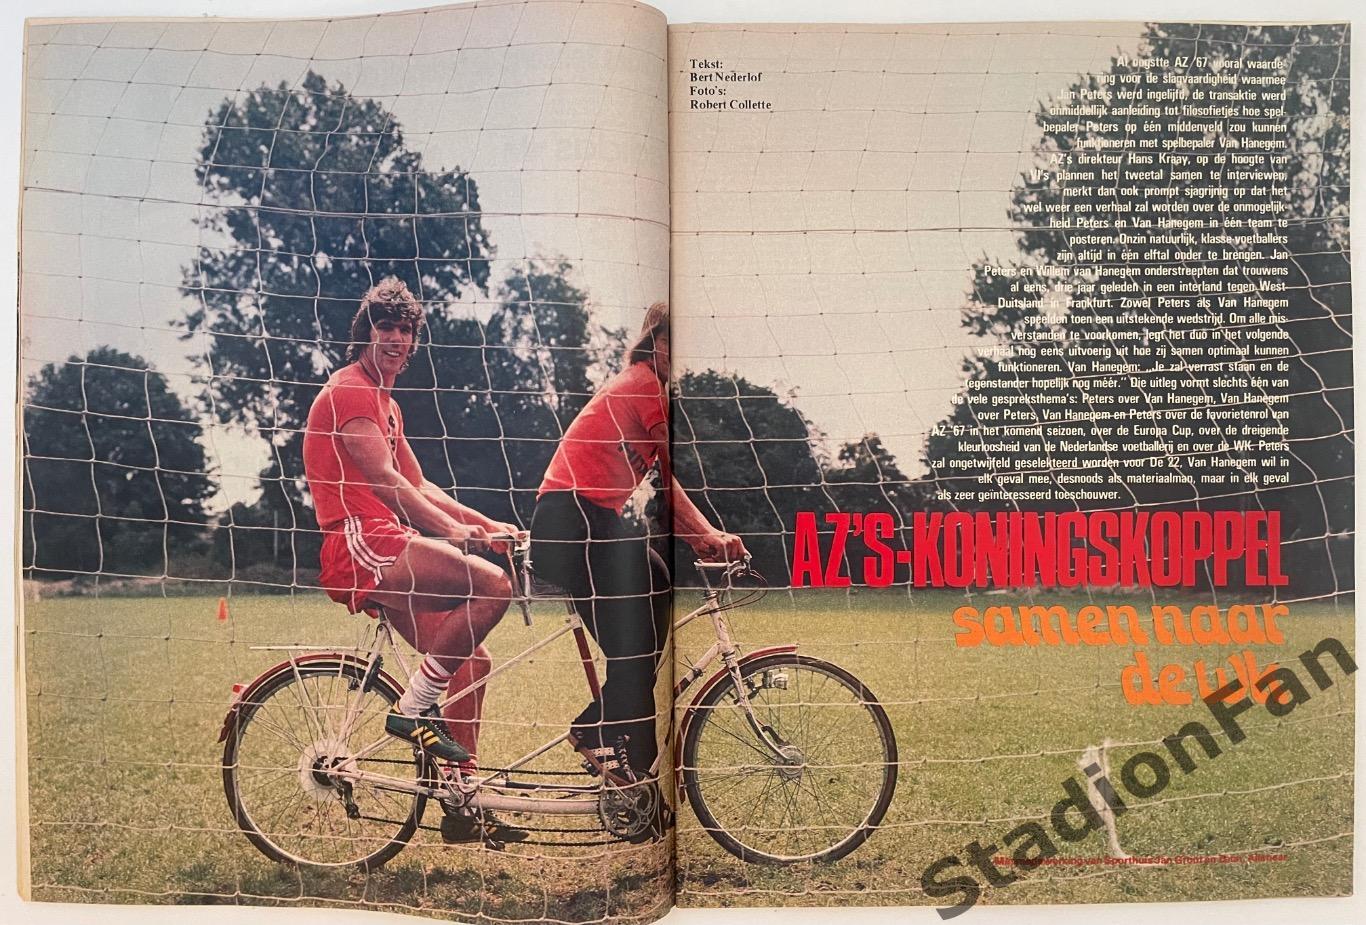 Журнал Voetbal nr.32 - 1977 год. 3